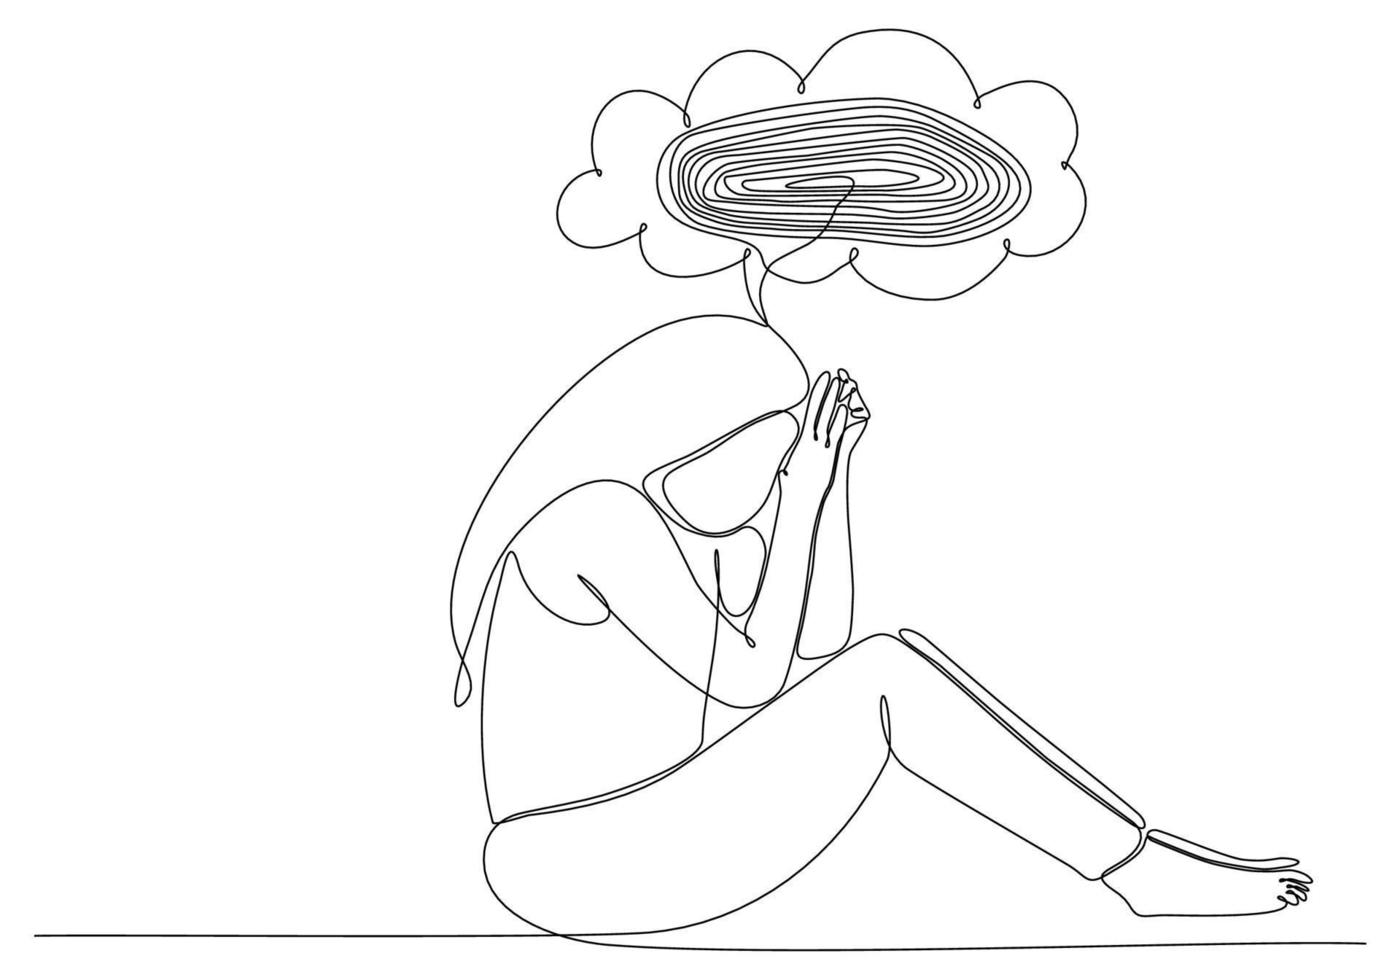 kontinuerlig linjeteckning av ung kvinna som känner sig ledsen, trött och orolig som lider av depression i psykisk hälsa vektorillustration vektor